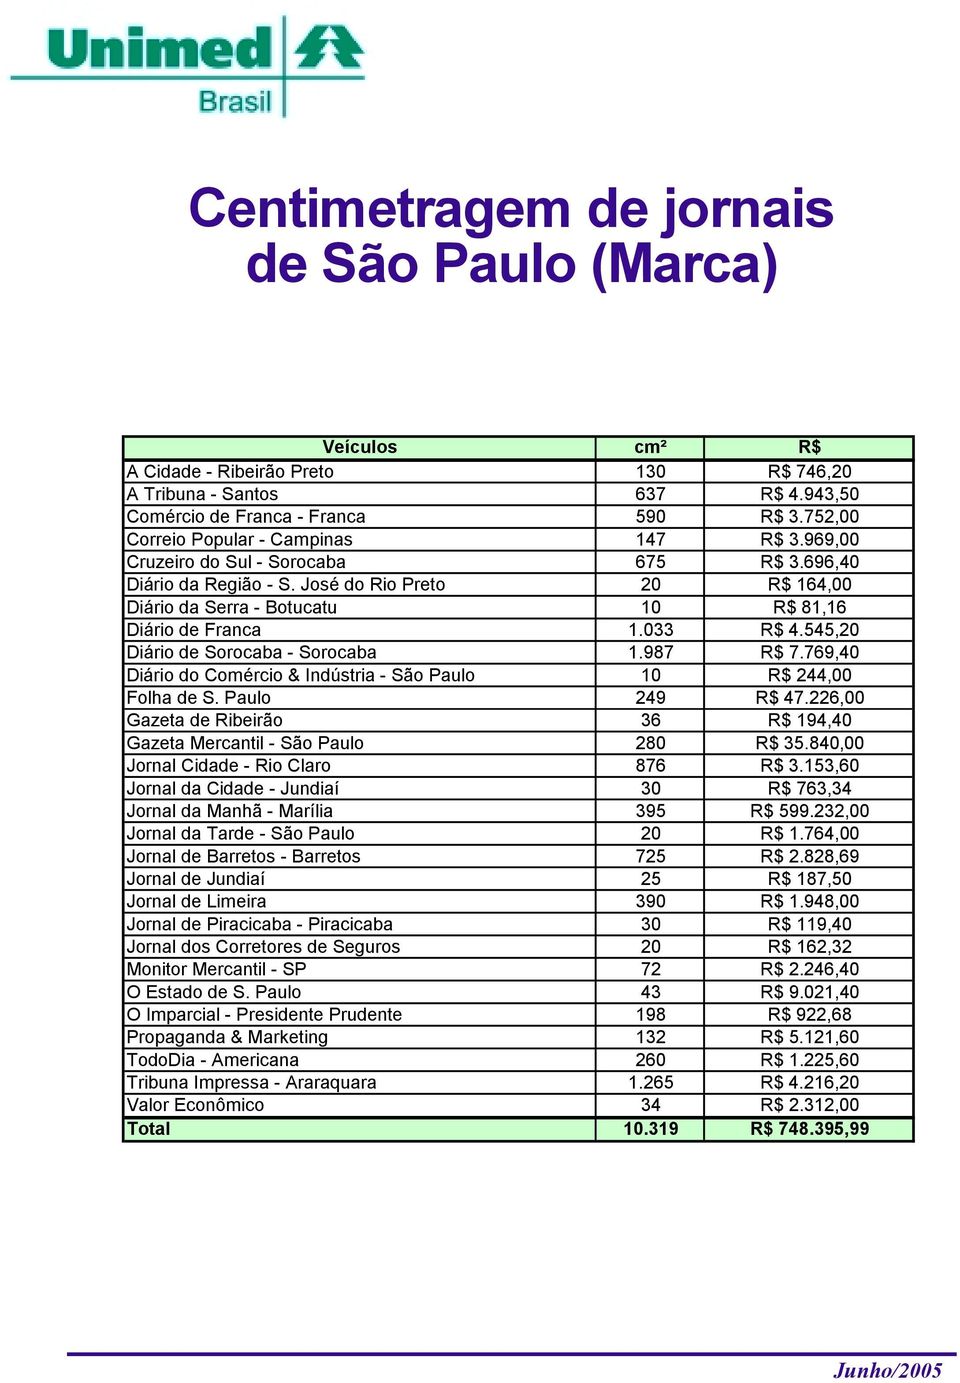 José do Rio Preto 20 R$ 164,00 Diário da Serra - Botucatu 10 R$ 81,16 Diário de Franca 1.033 R$ 4.545,20 Diário de Sorocaba - Sorocaba 1.987 R$ 7.